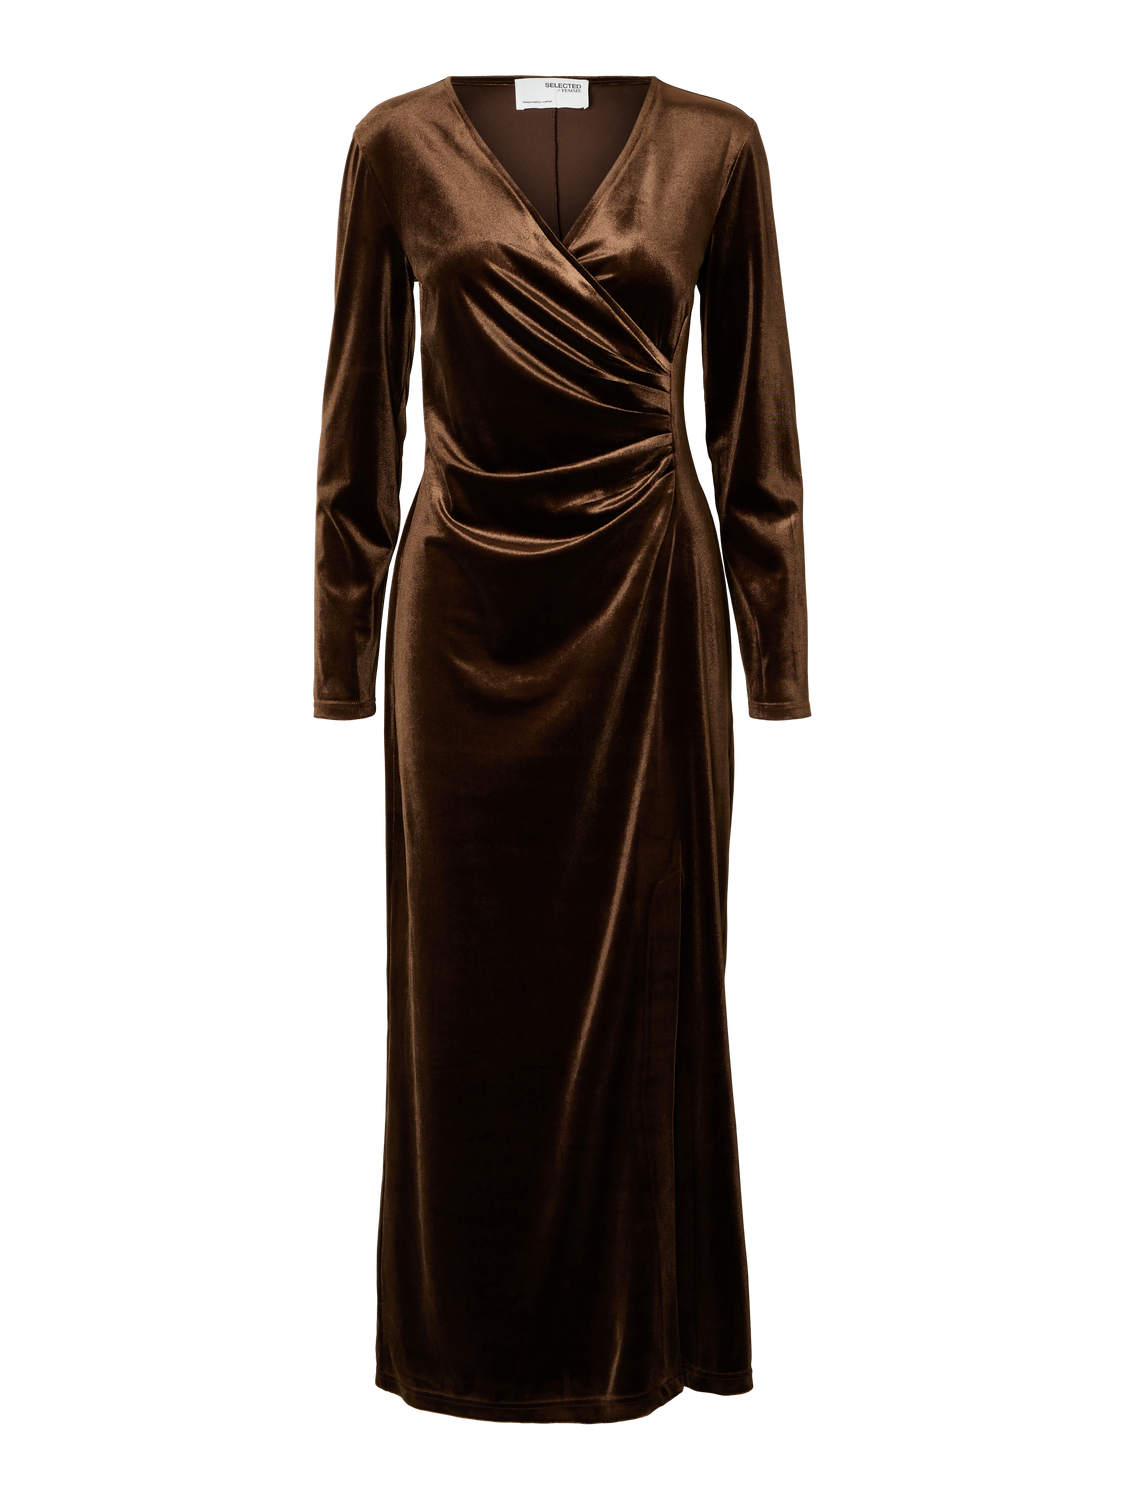 SELECTED FEMME - TARA Dress - Copper Brown